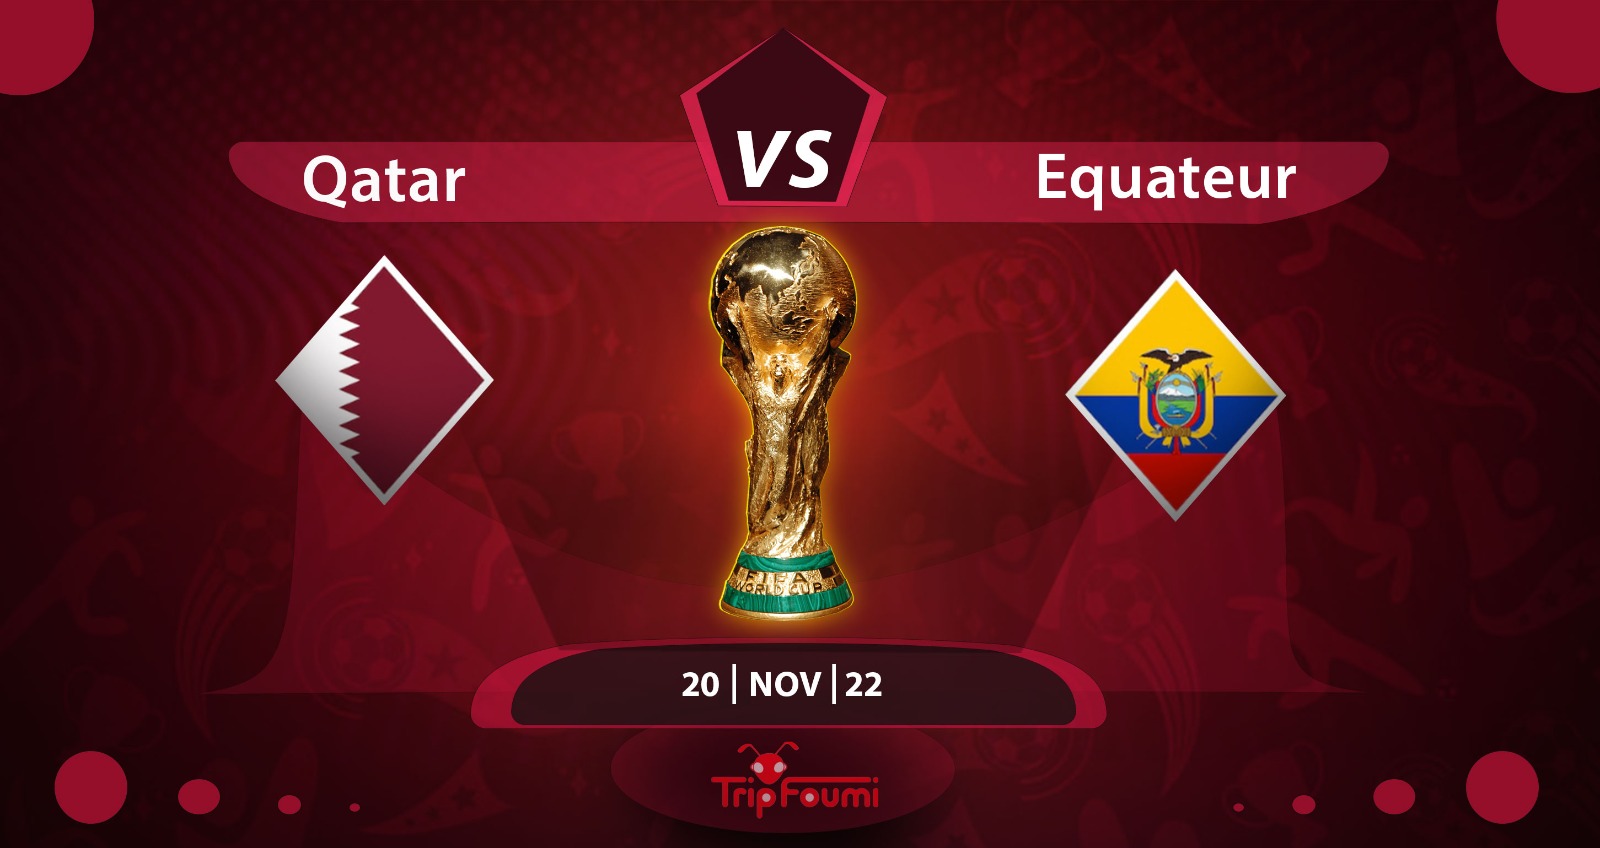 Foumimondial : Qatar 0-2 Equateur, le score du premier match